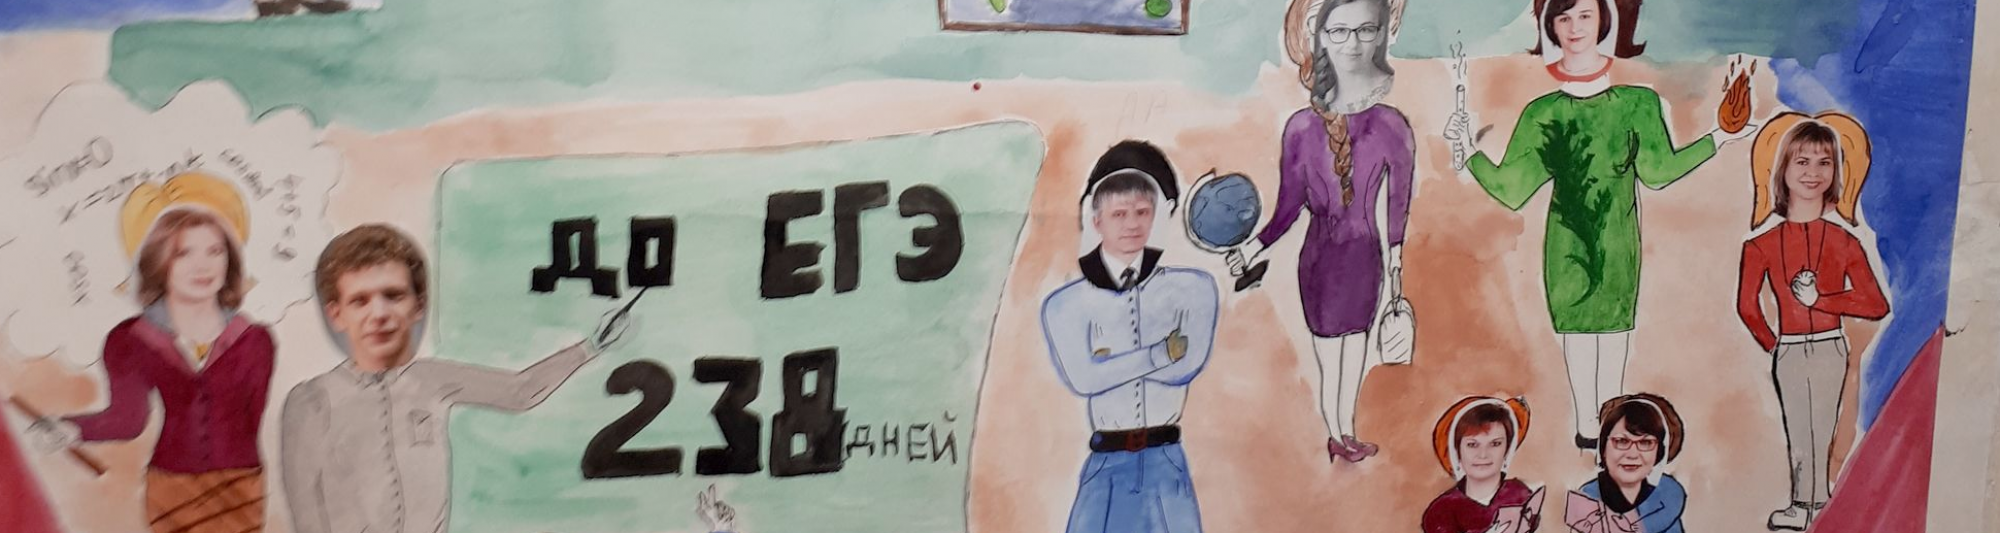 Виктор Носов поздравил коллектив учителей школы №34 с профессиональным праздником 